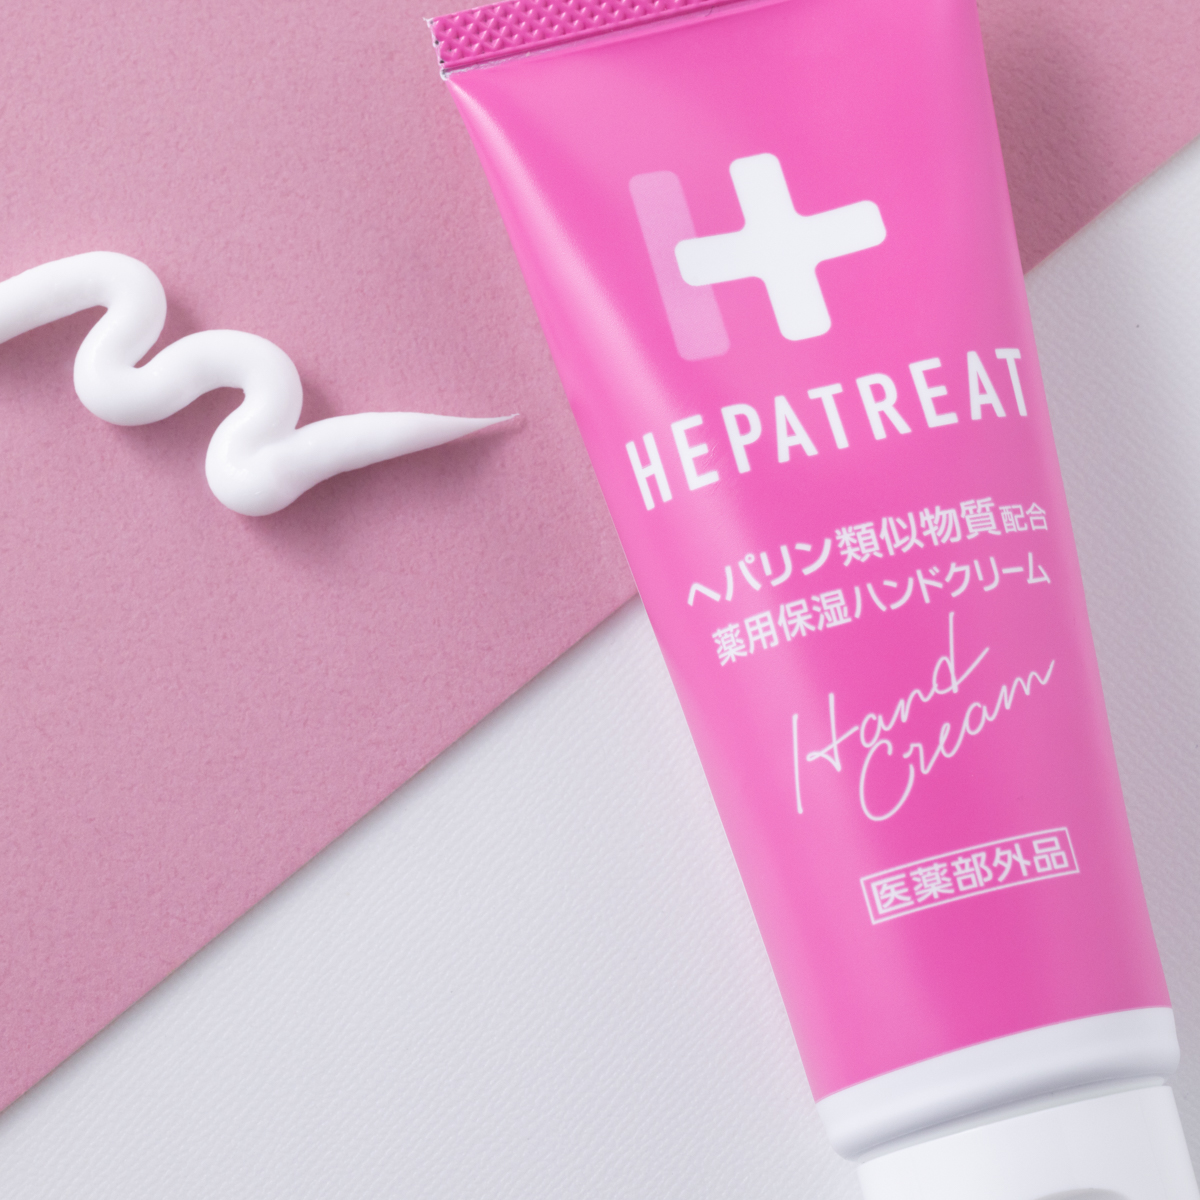 HEPATREAT HAND CREAM - 60g